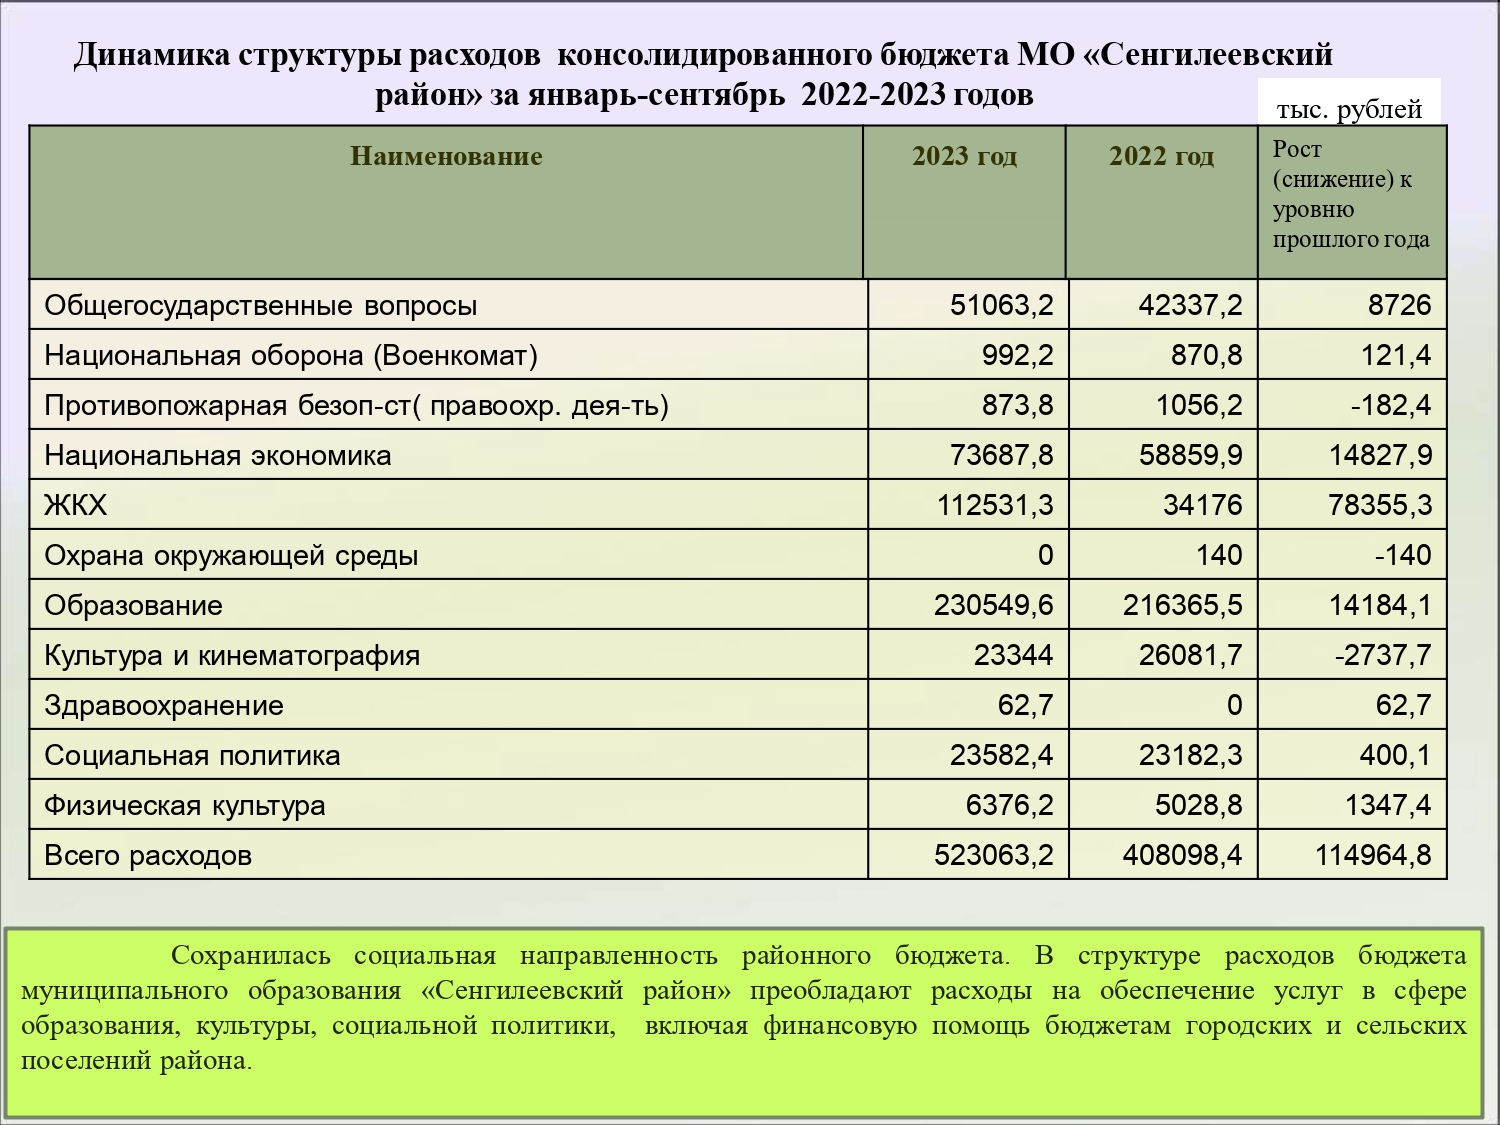 Свод консолидированного бюджета. Пример бюджета местного уровня. Консолидированный бюджет Дагестана. Исполнение местного бюджета. Структура консолидированного бюджета Новосибирской области рисунок.